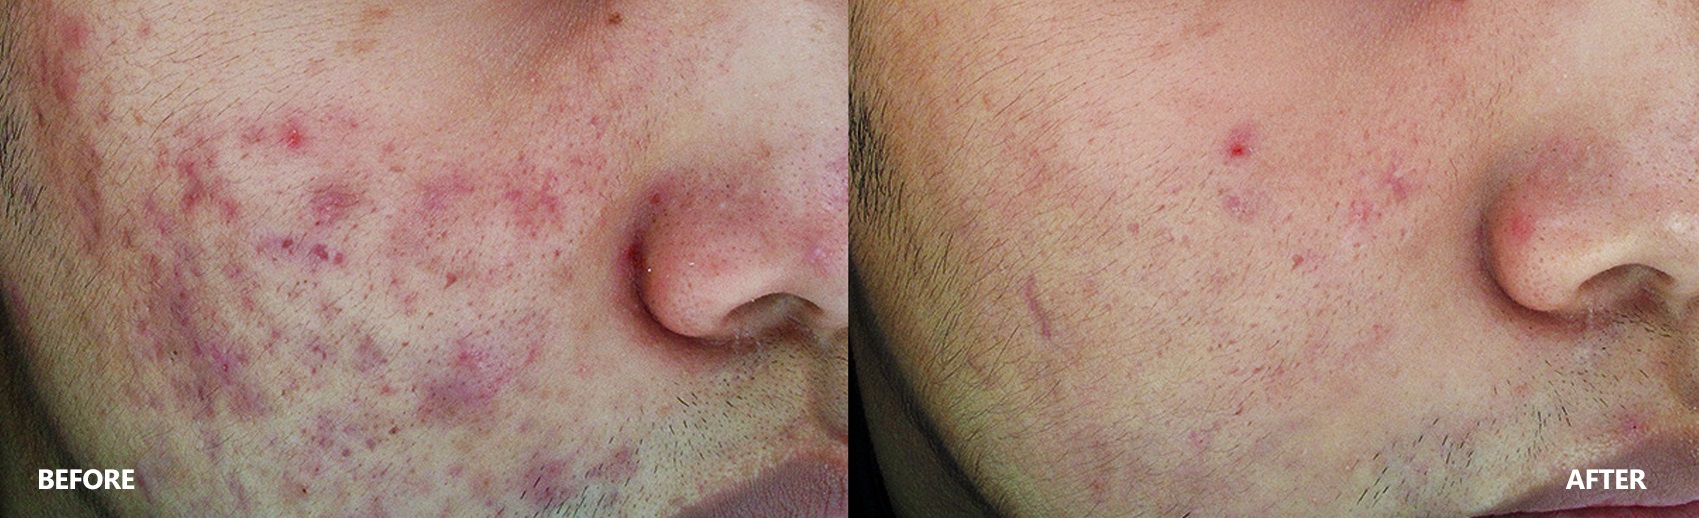 acne-result-banner-3.jpg